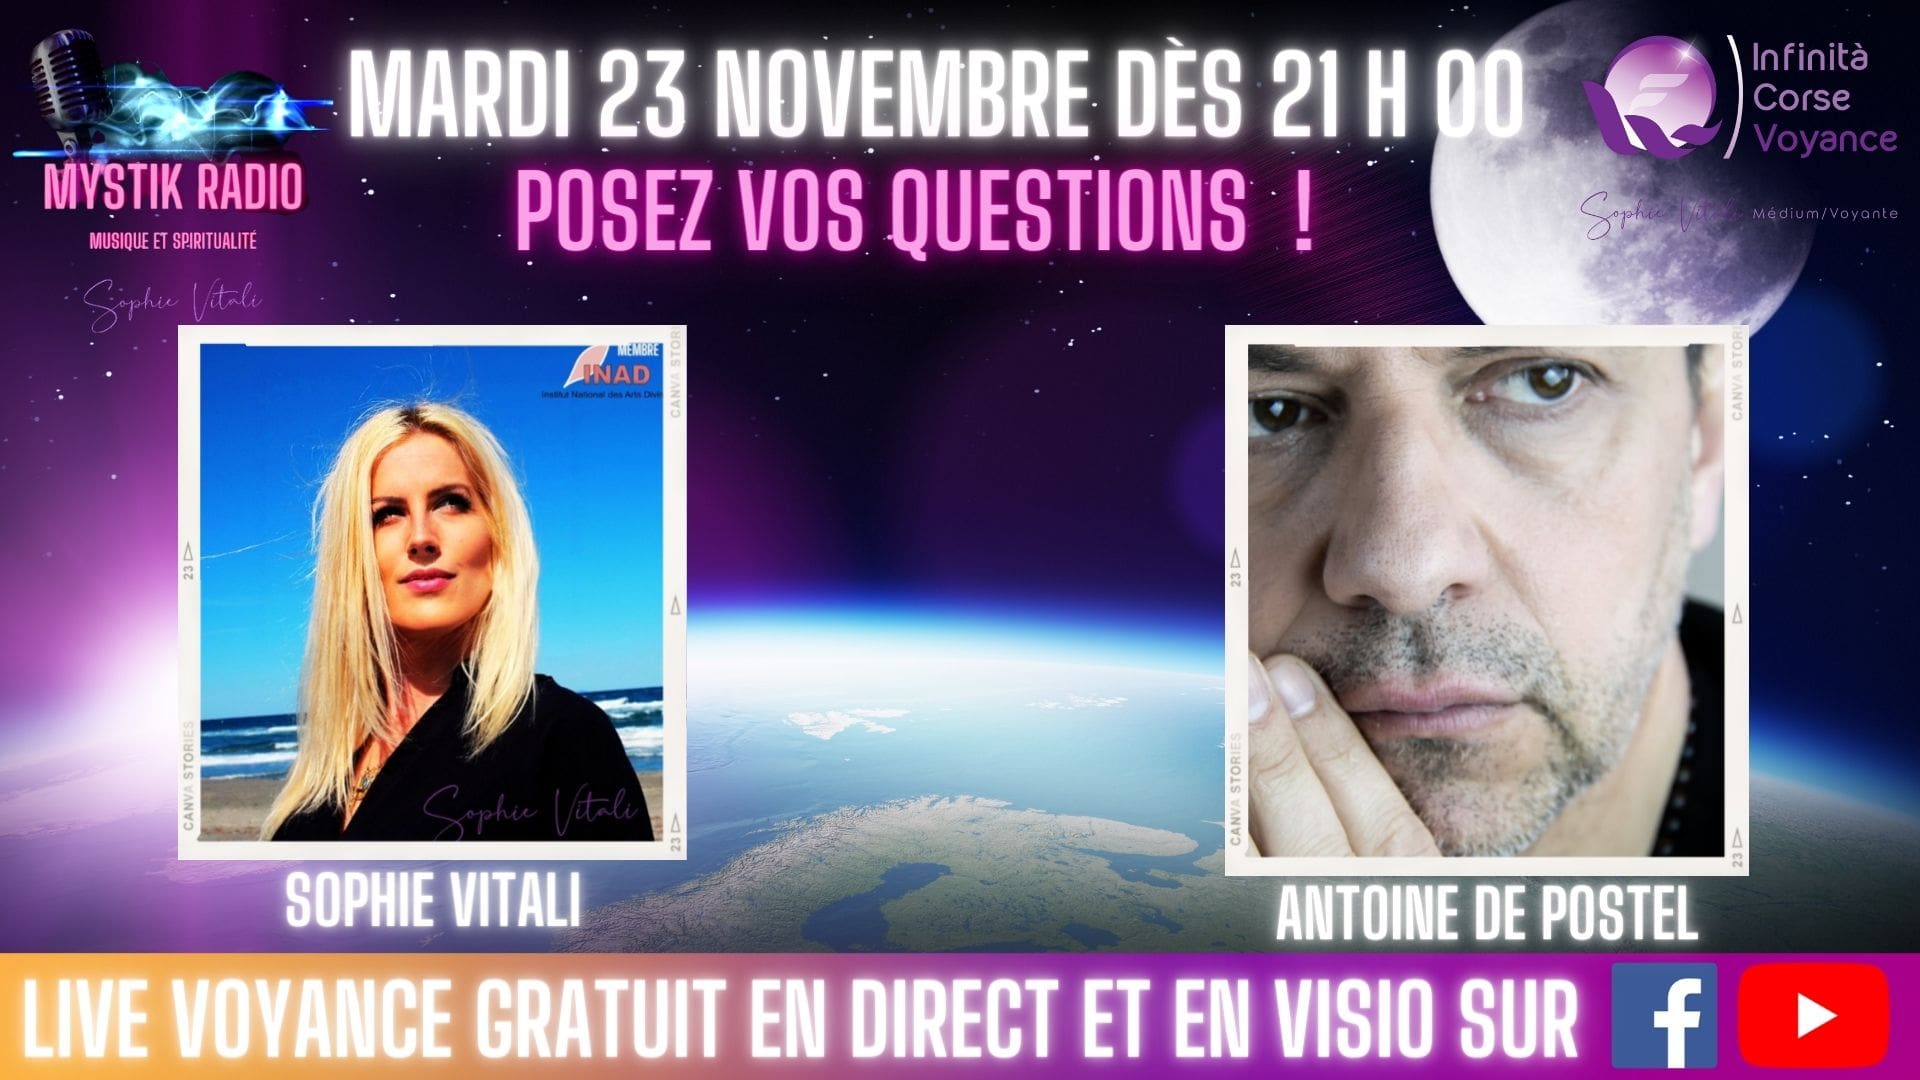 Sophie Vitali & Antoine de Postel répondent à vos questions en direct sur Facebook et YouTube ! 26 novembre 2021